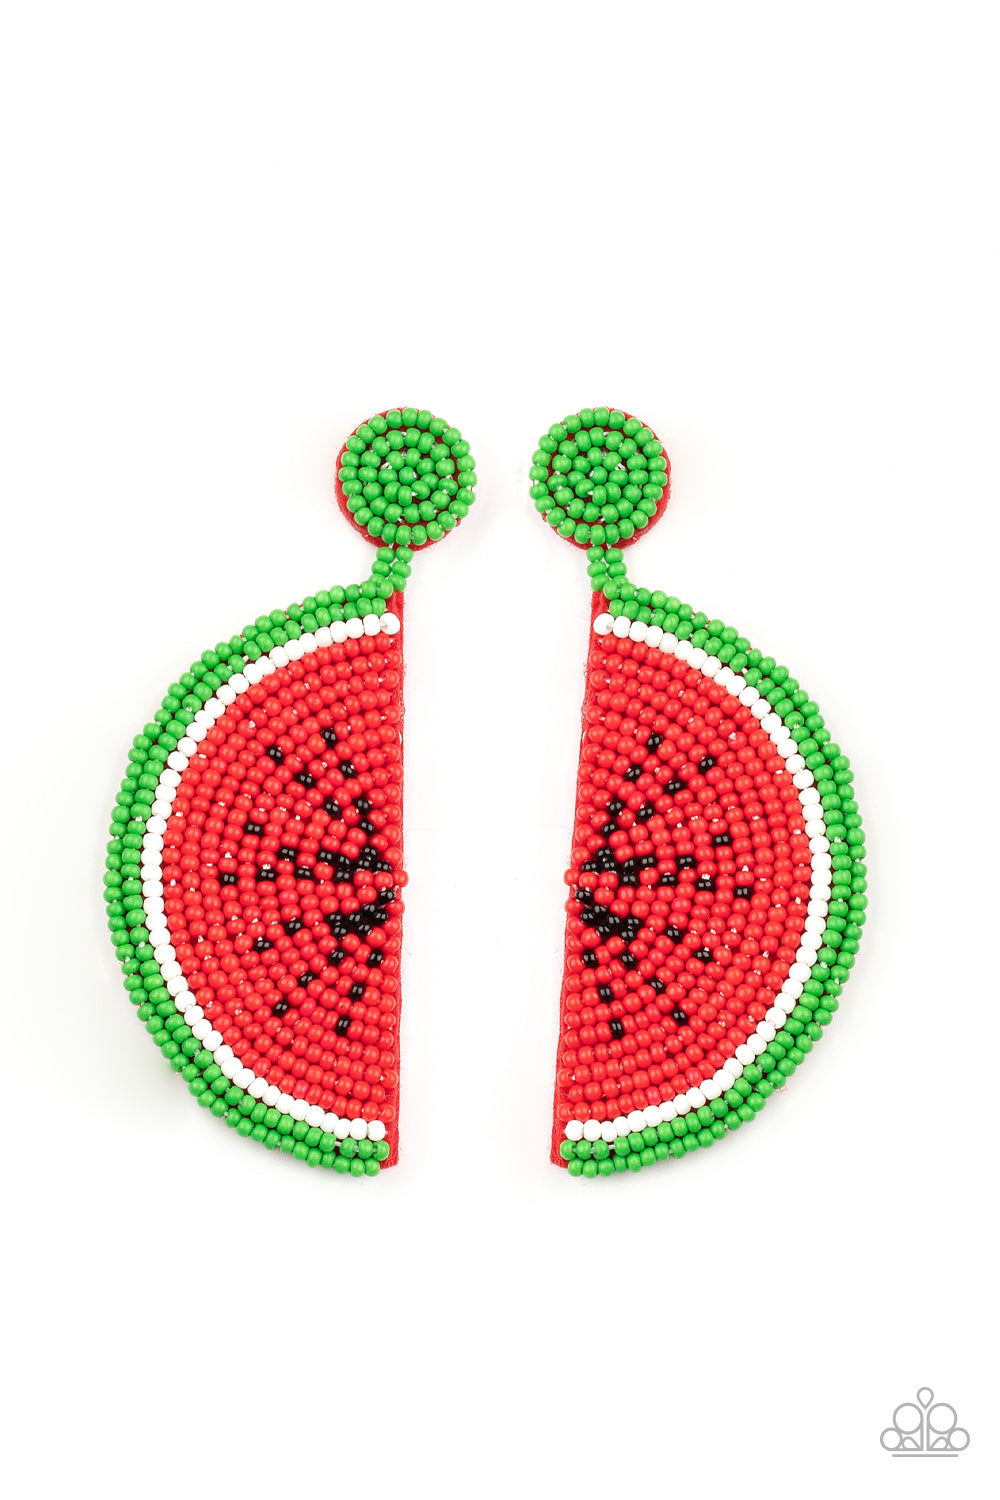 Beebeecraft idea on making seedbead watermelon earrings 